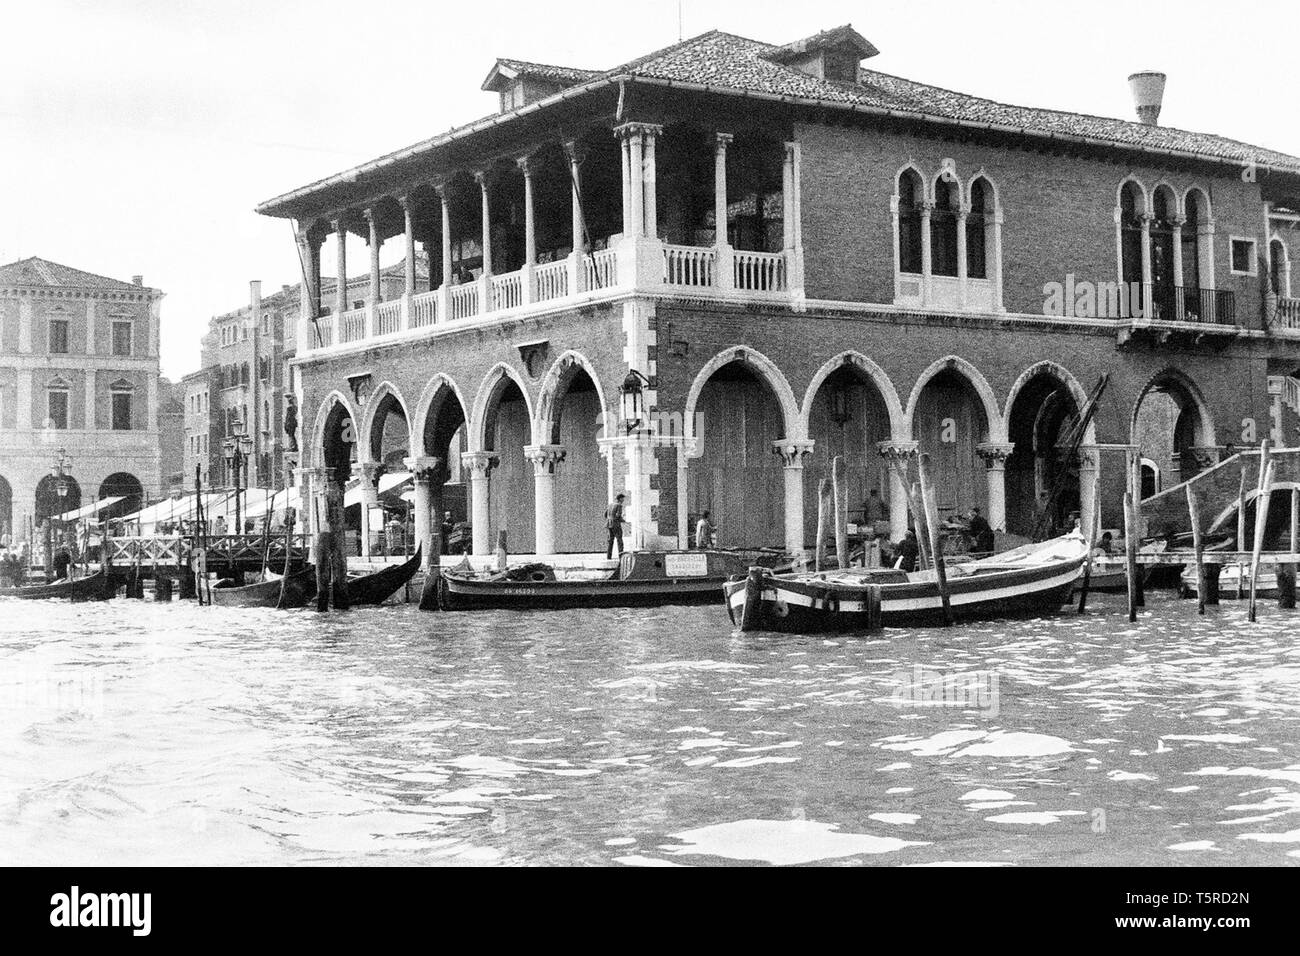 Venezia, Italia, 1980 - foto in bianco e nero - "Pescheria di Rialto': uno dei centri nevralgici del commercio nel modo più sereno e antica Repubblica di Venezia Foto Stock